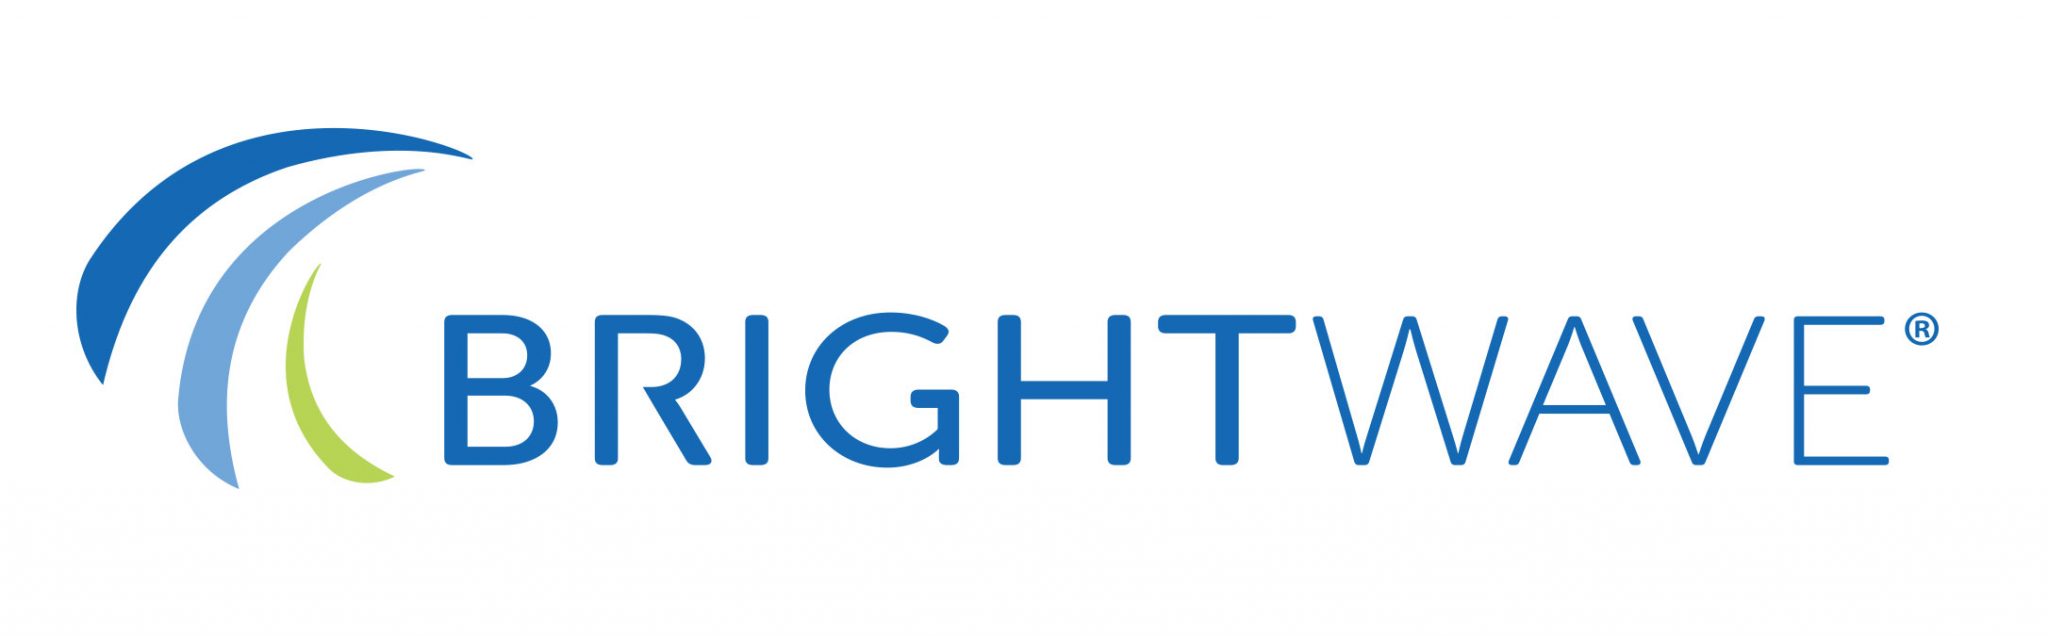 brightstar-logo